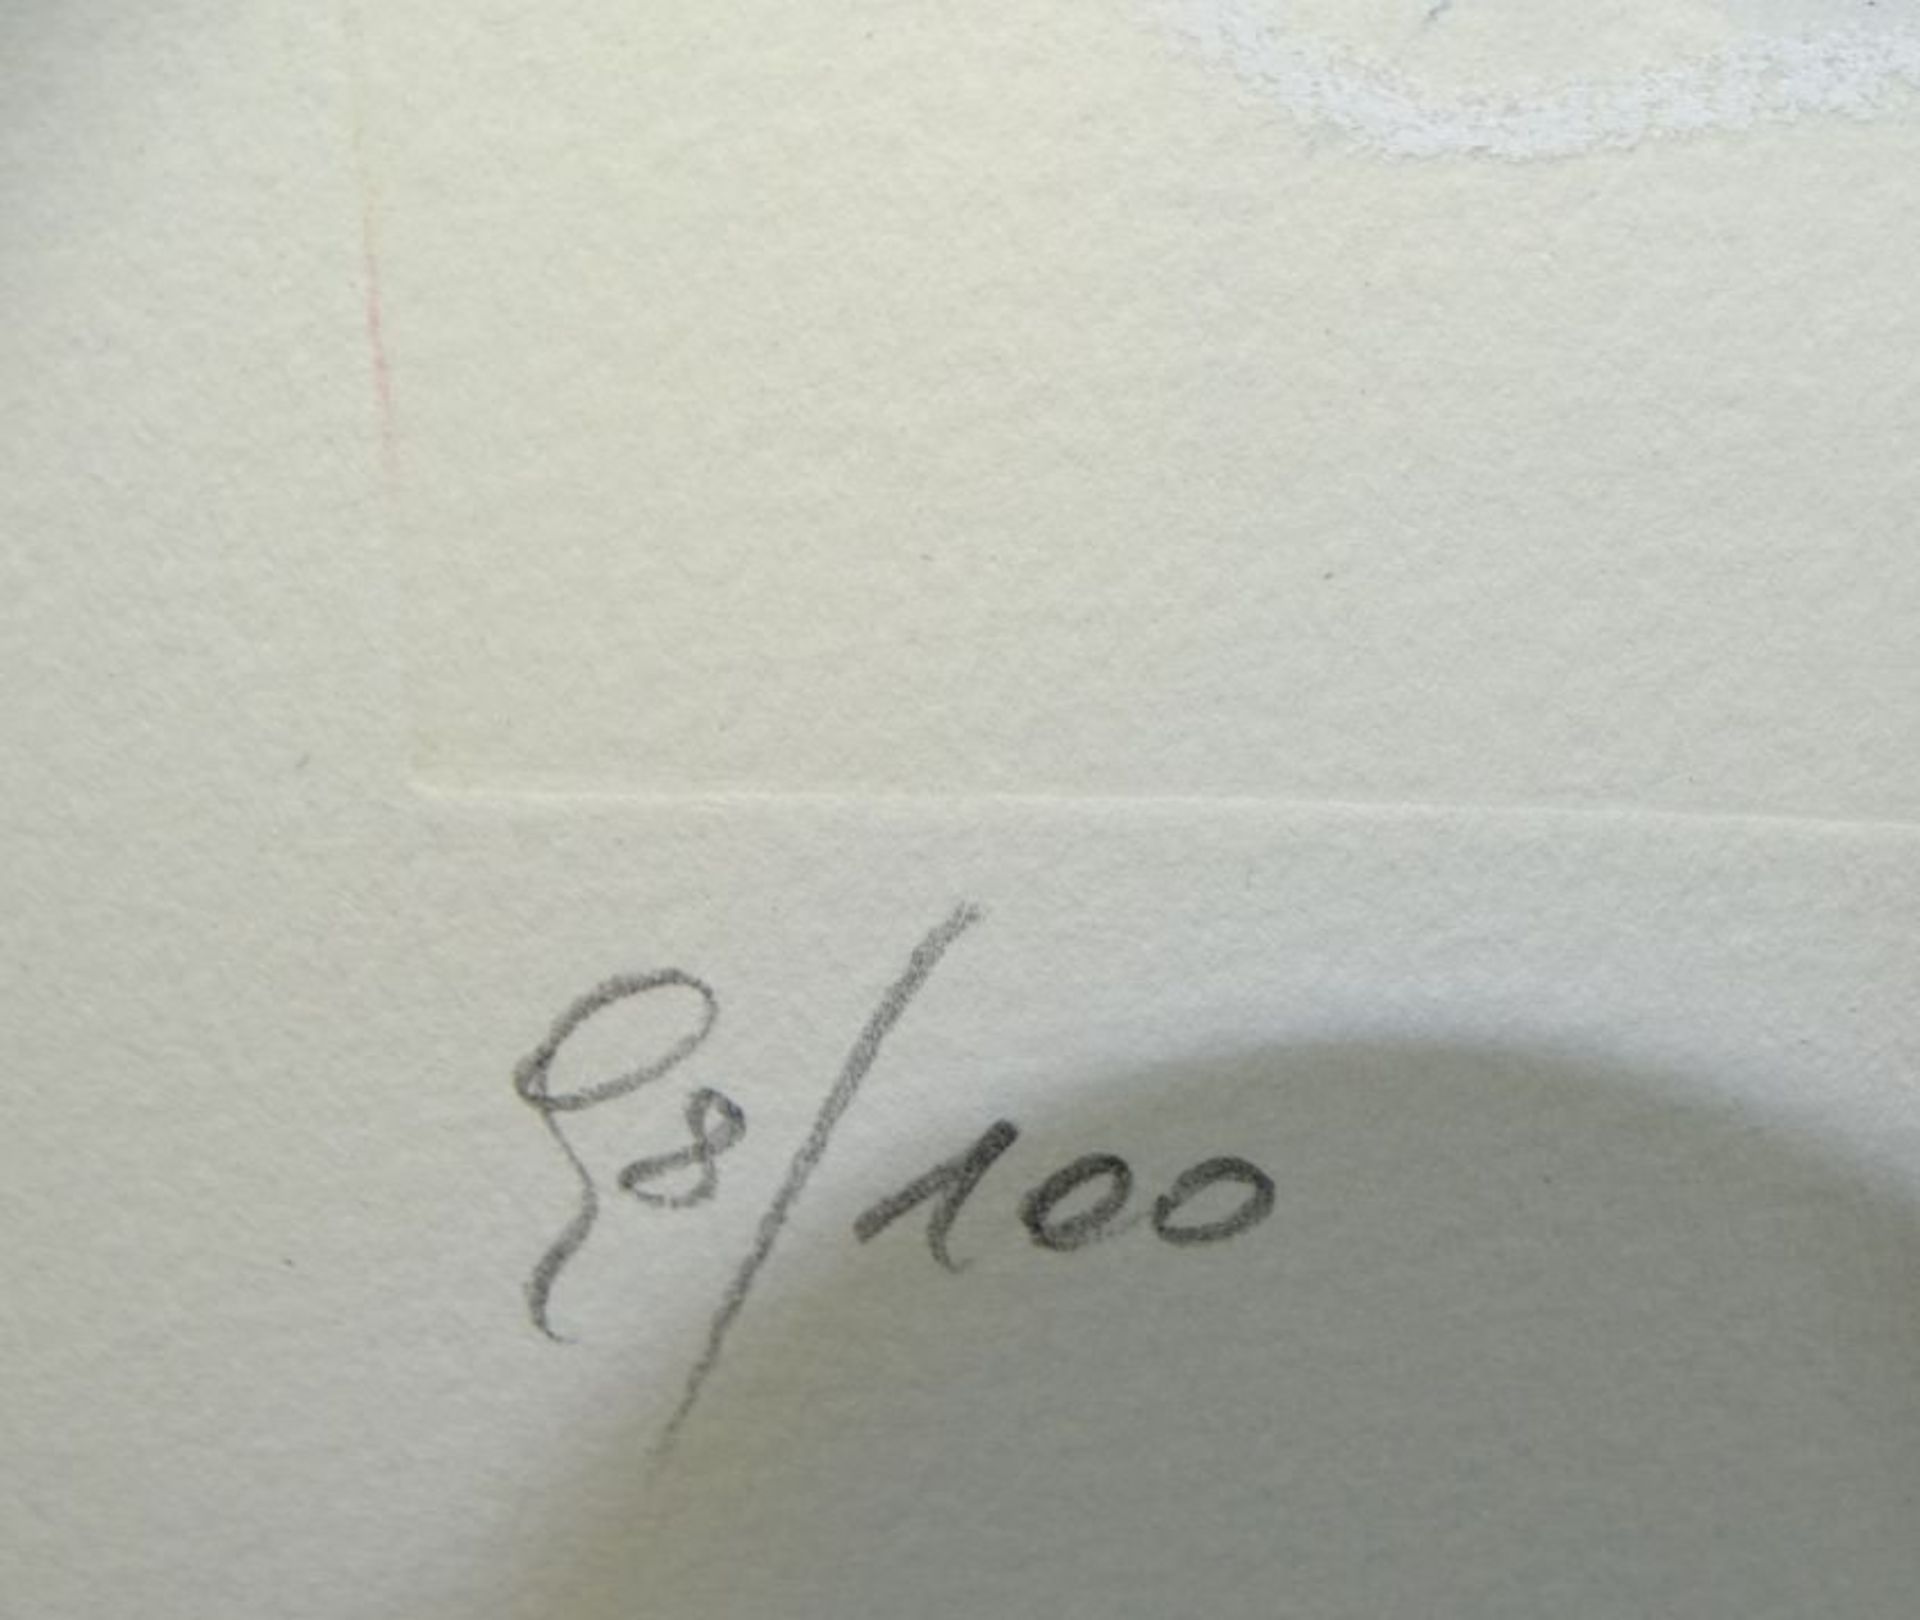 unleserl. sign. Farblithografie, Farbradiurung?, betitelt "Wege" Nr. 98/100, in PP, MG 28x38 cm, BG - Image 6 of 6